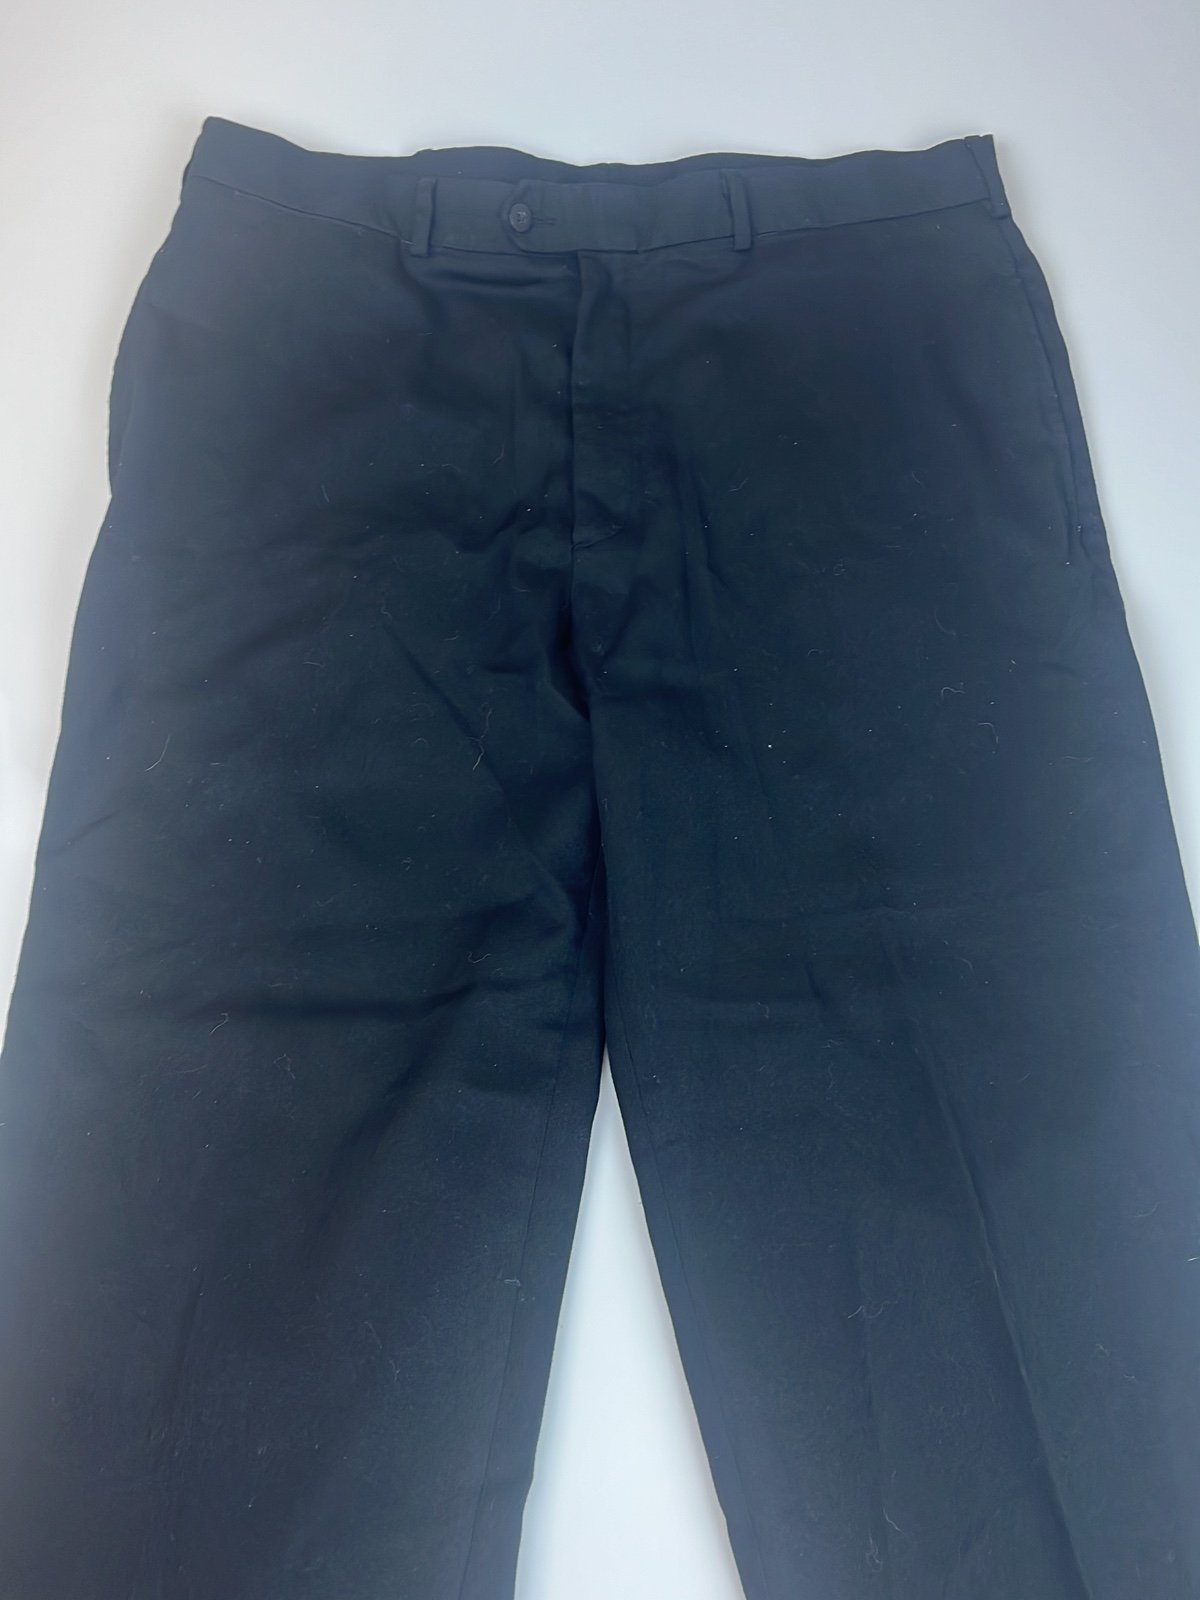 Stylish Van Heusen Black Pants S8-24 Kn4HIyiKu Buying Cheap